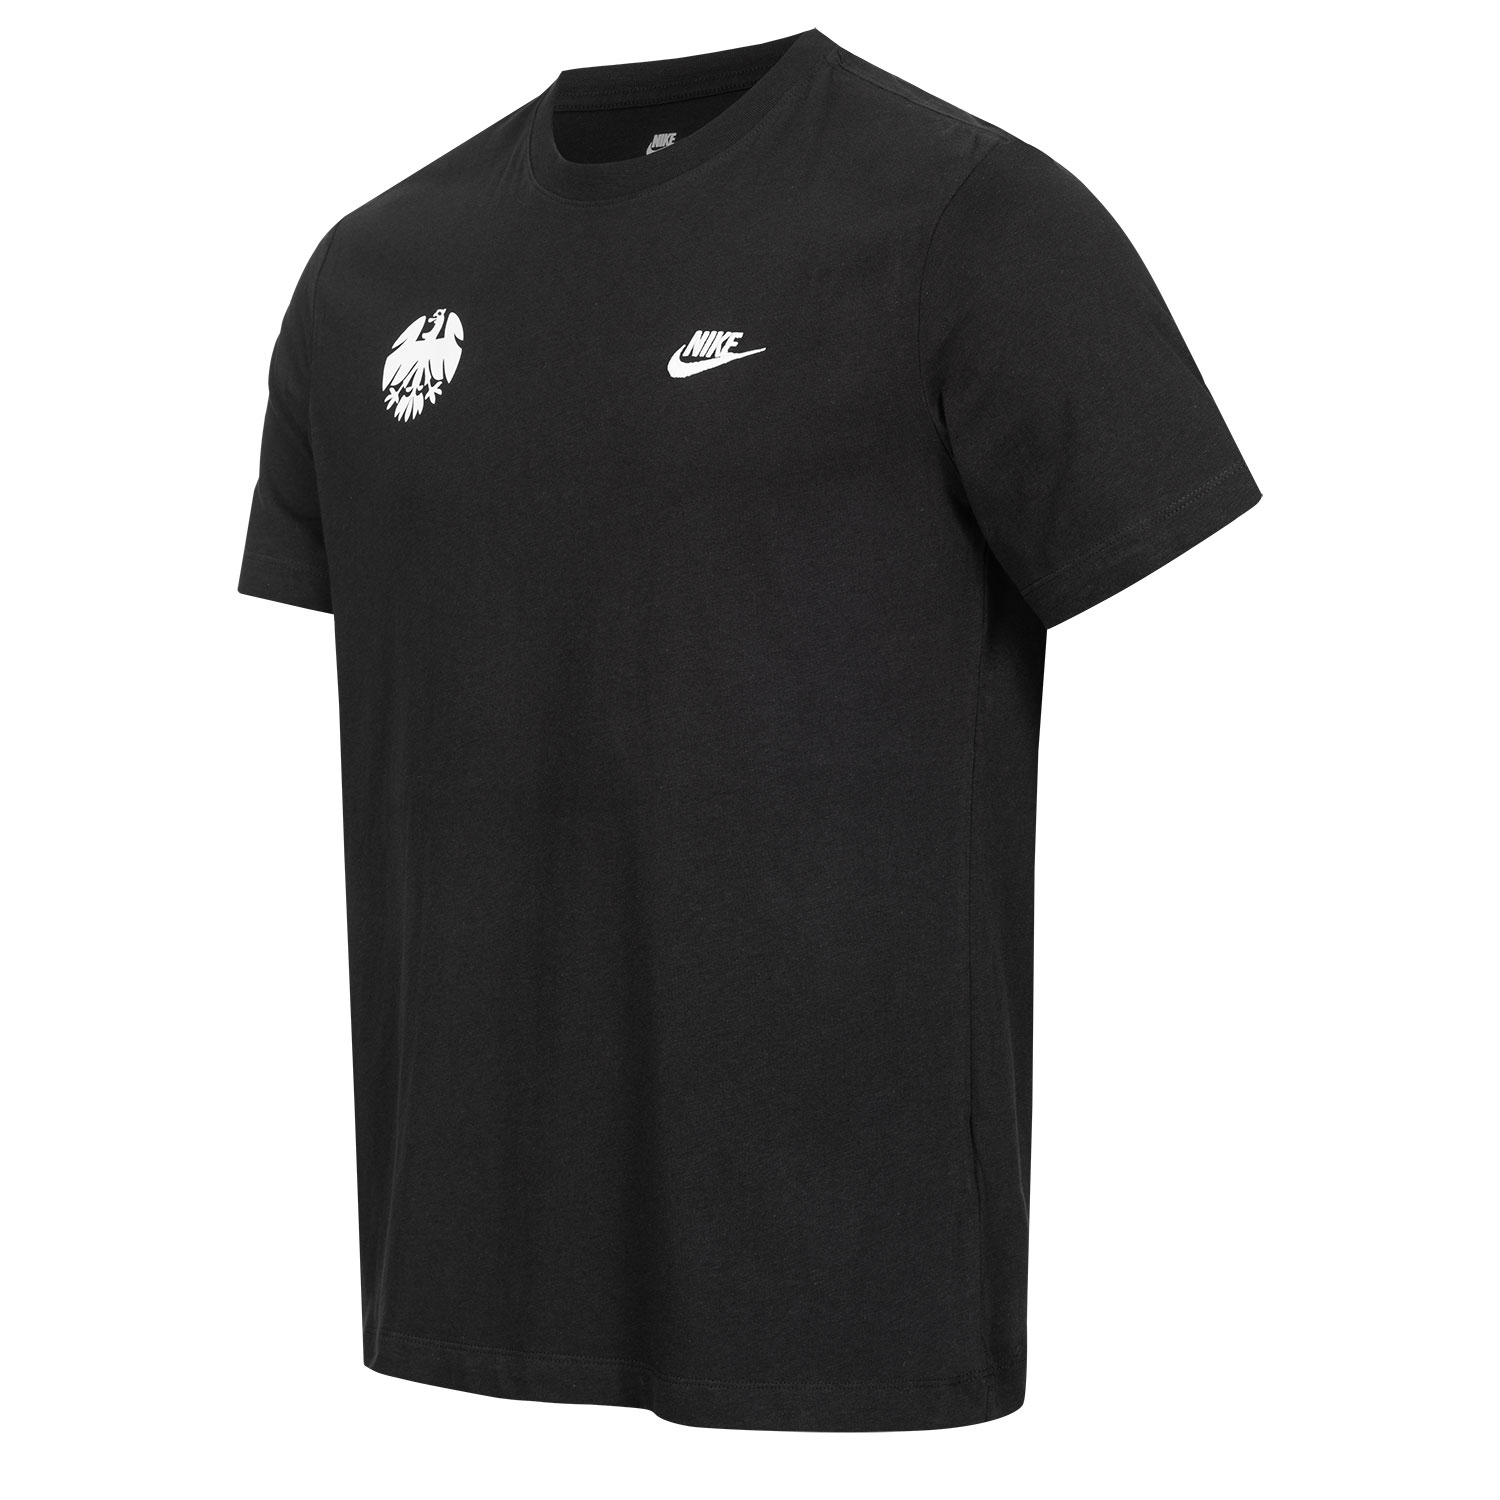 Bild 3: Nike T-Shirt New Eighties black